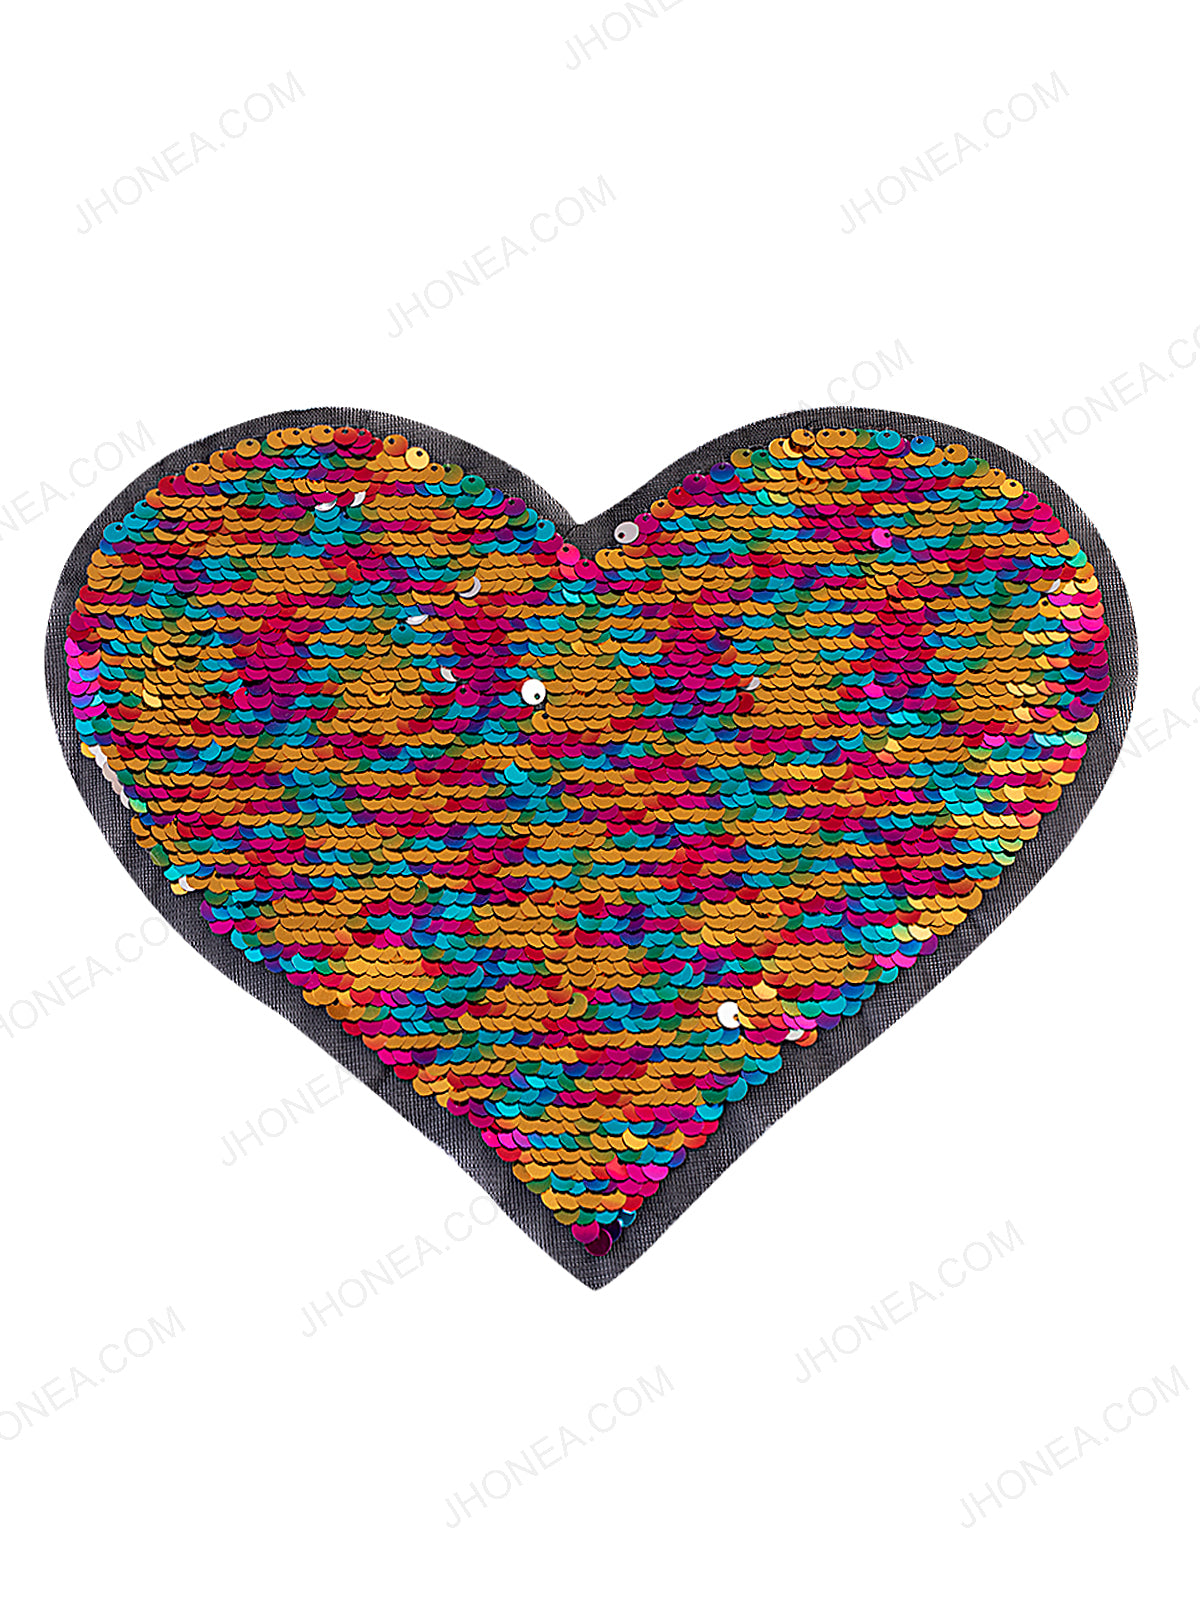 Heart Shape Reflective Multicolor Reversible Sequins Patch